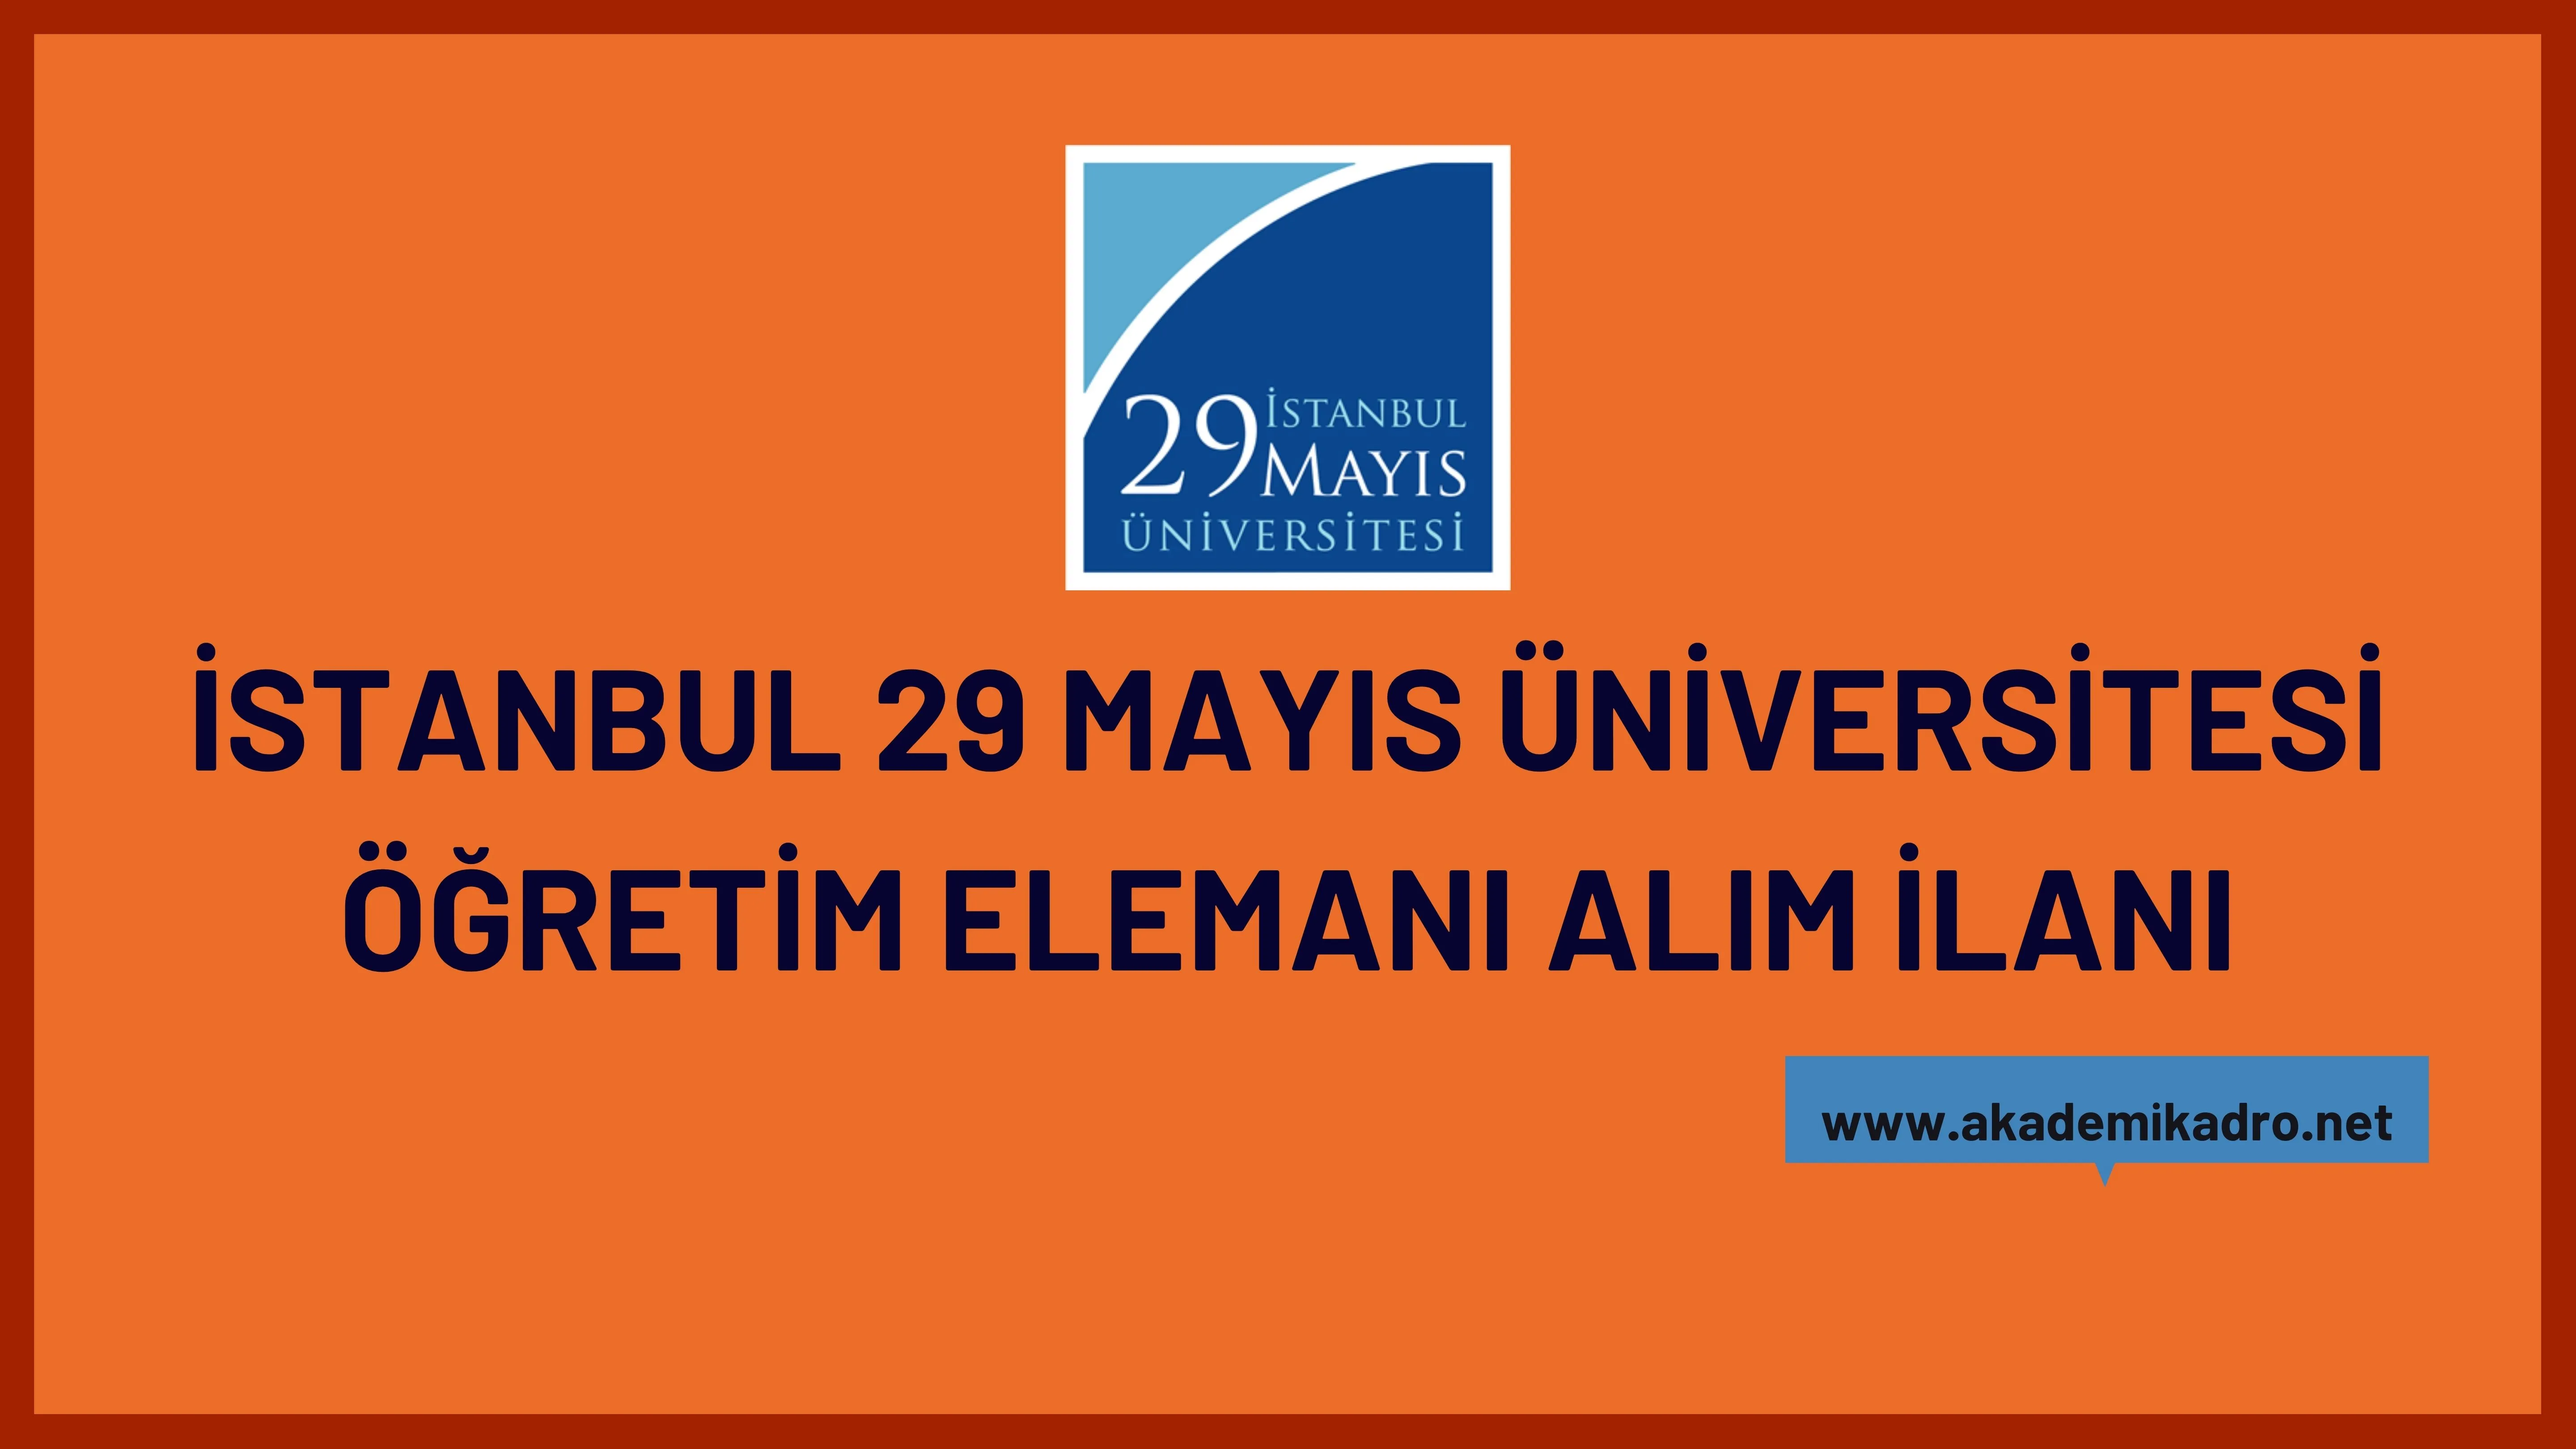 İstanbul 29 Mayıs Üniversitesi 2 akademik perosnel alacak.